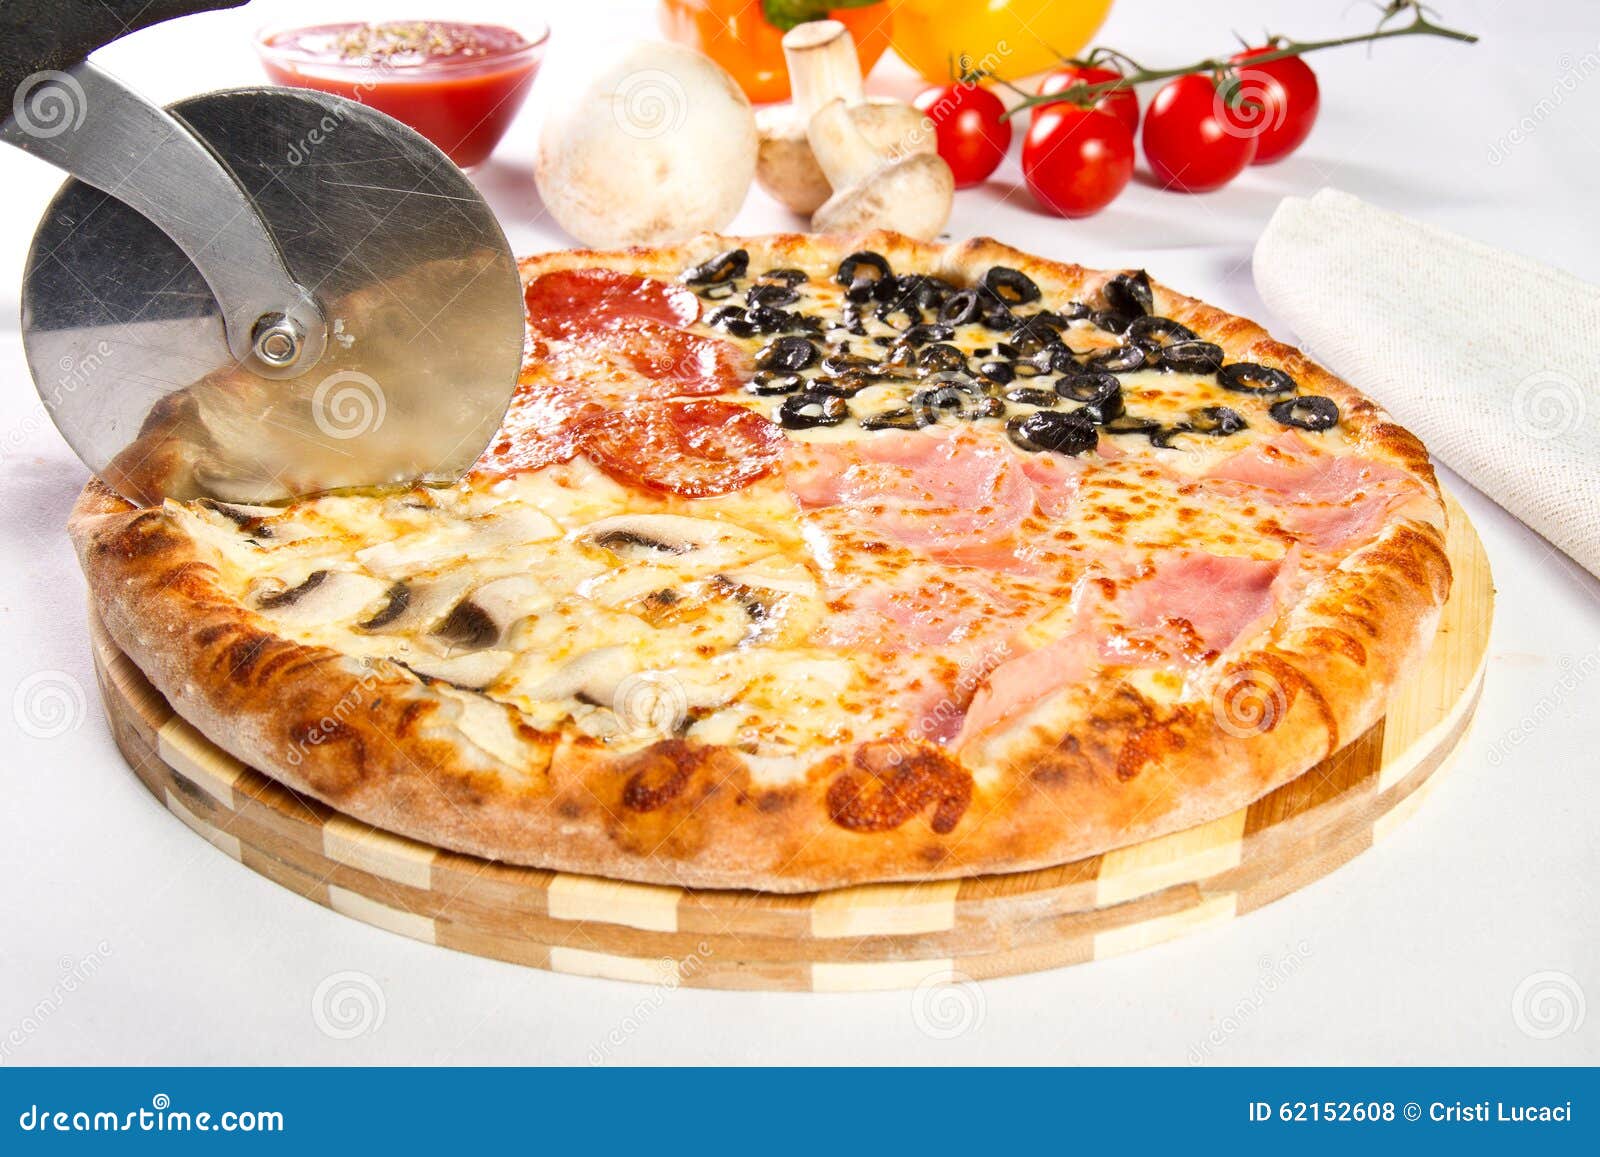 калорийность пицца четыре сезона фото 17